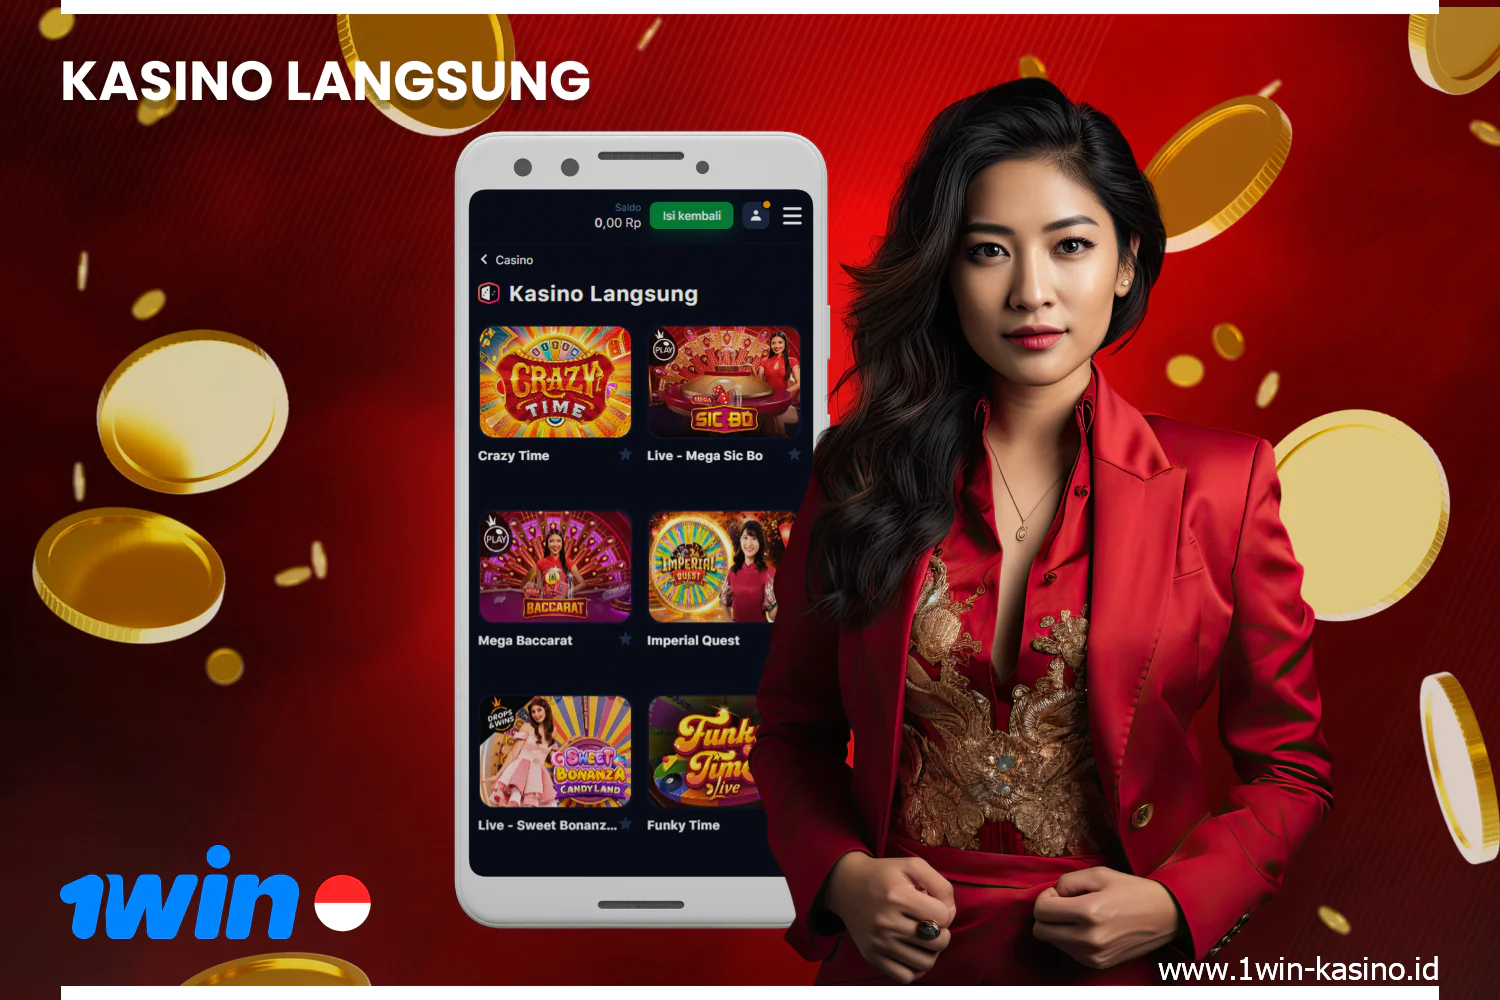 Bagian permainan langsung di kasino online 1win Indonesia menawarkan berbagai pilihan permainan seperti bakarat, roulette, dan blackjack